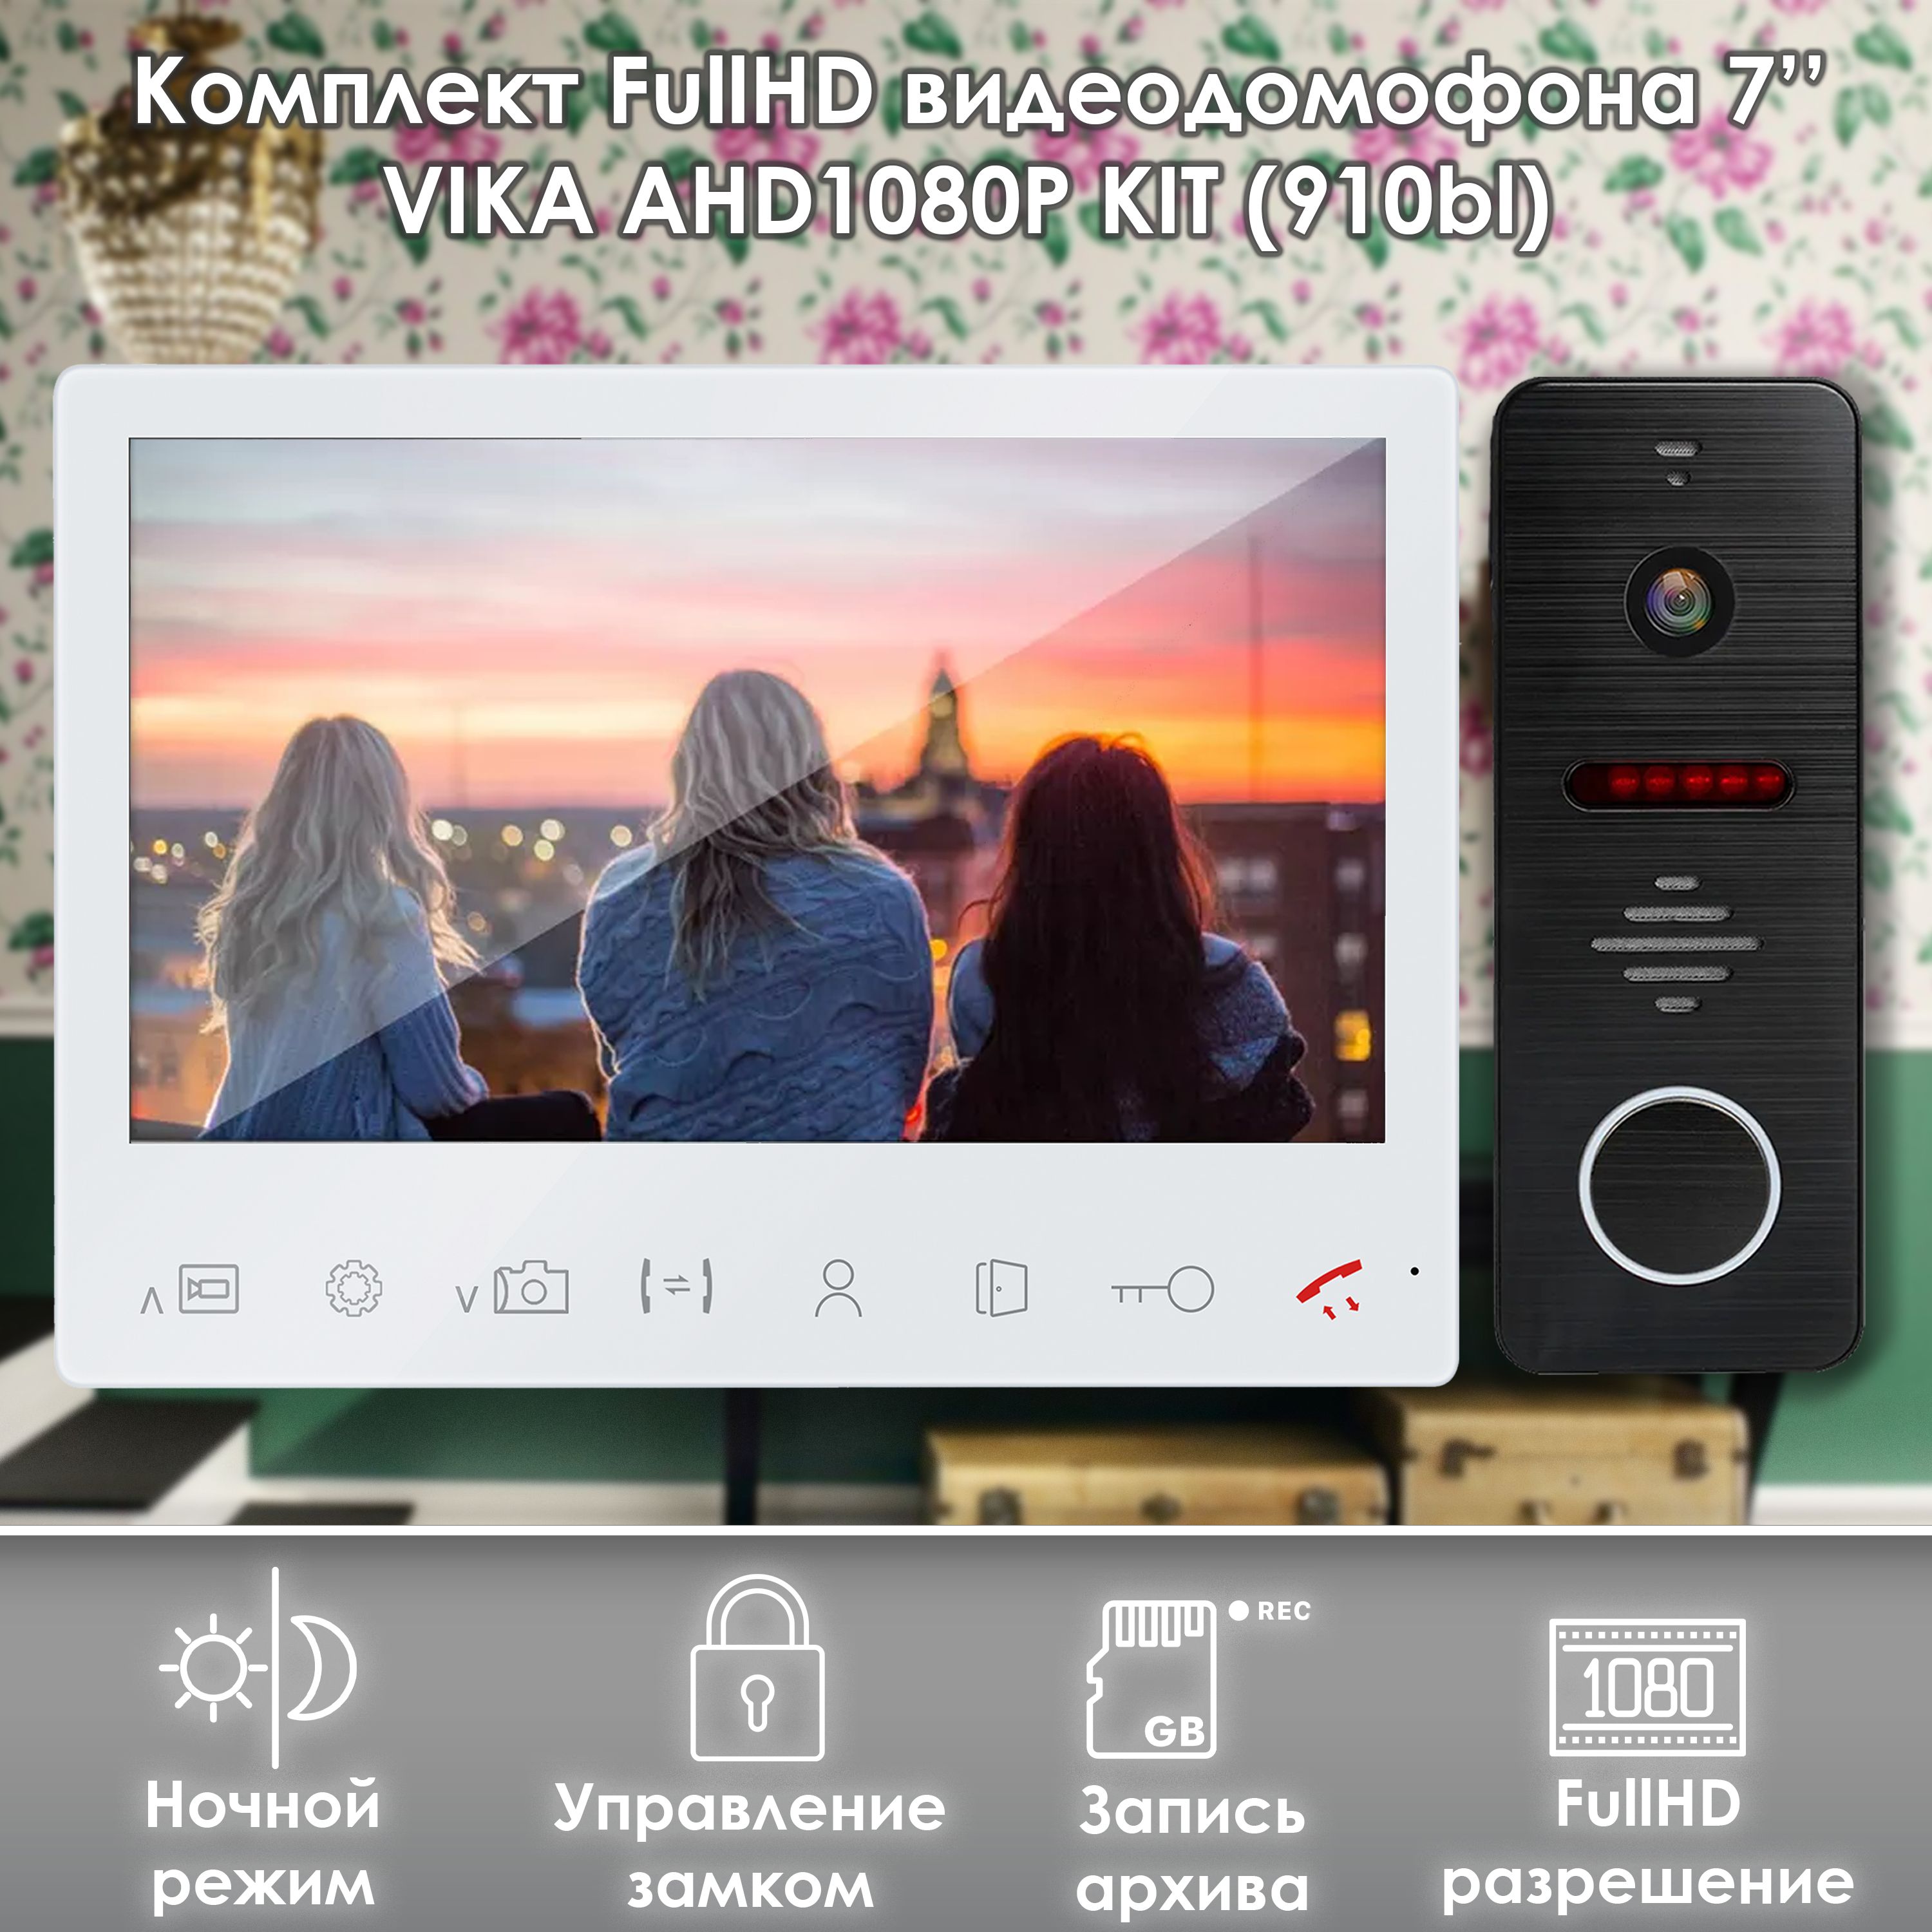 Комплект видеодомофона Alfavision Vika-KIT (910bl) Full HD 7 дюймов